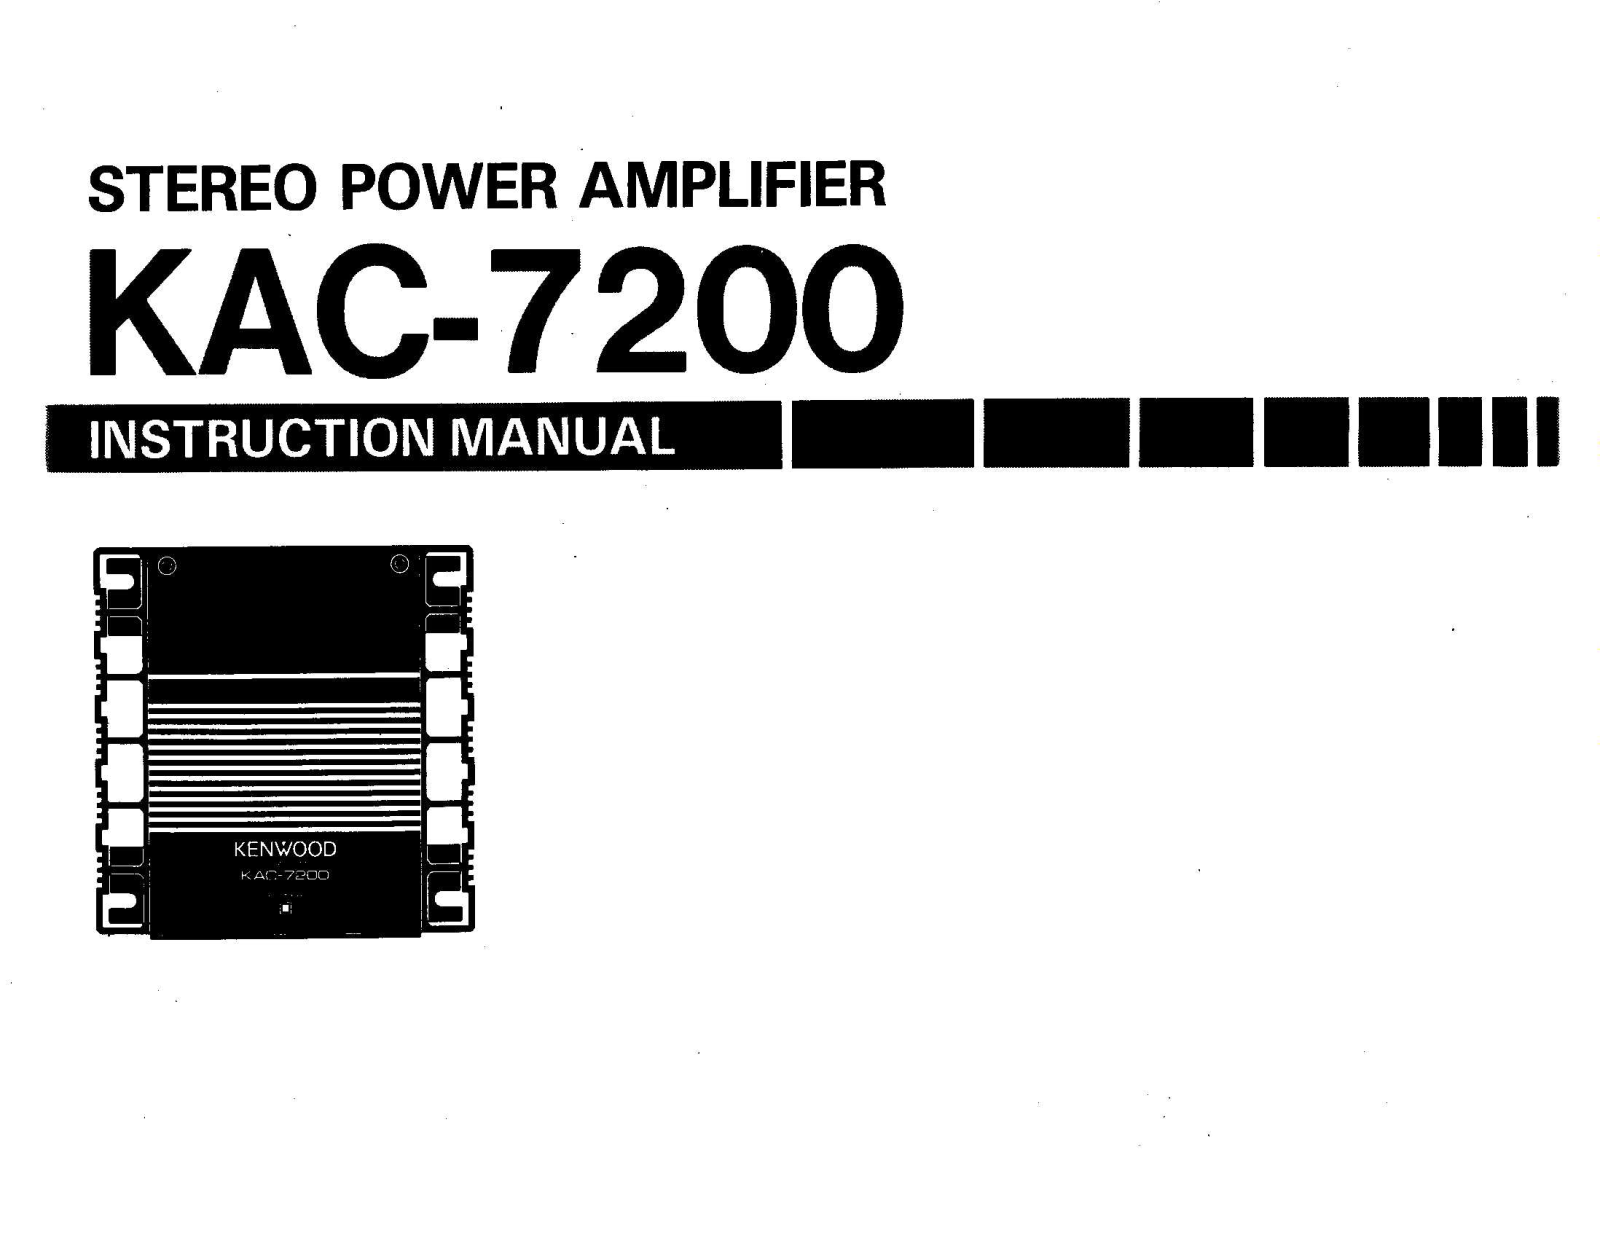 Kenwood KAC-7200 User Manual